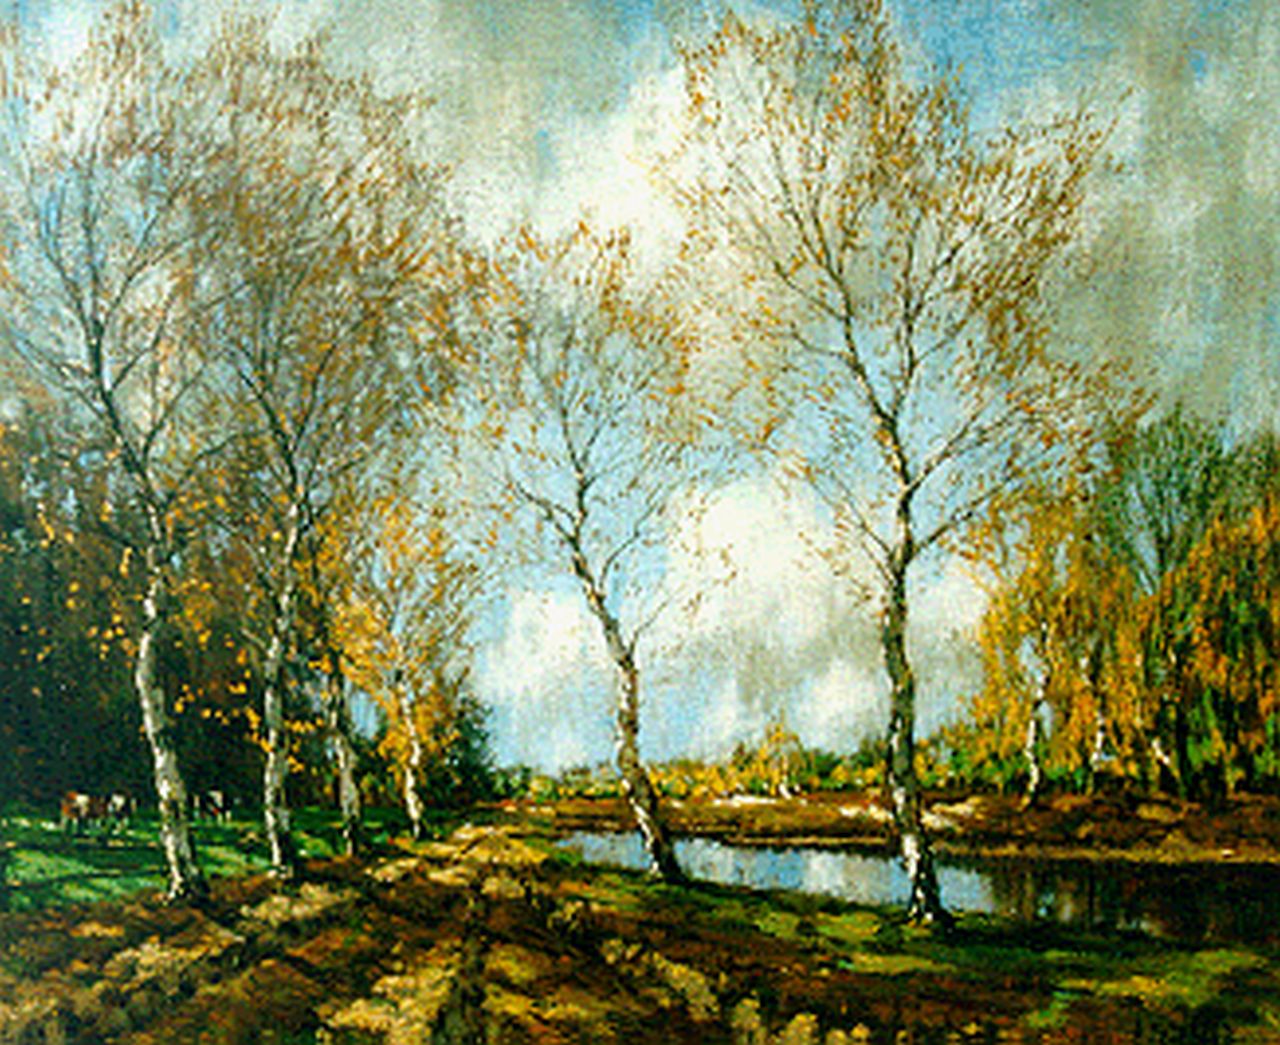 Gorter A.M.  | 'Arnold' Marc Gorter, Autumn landscape, oil on canvas 46.3 x 56.2 cm, signed l.r.